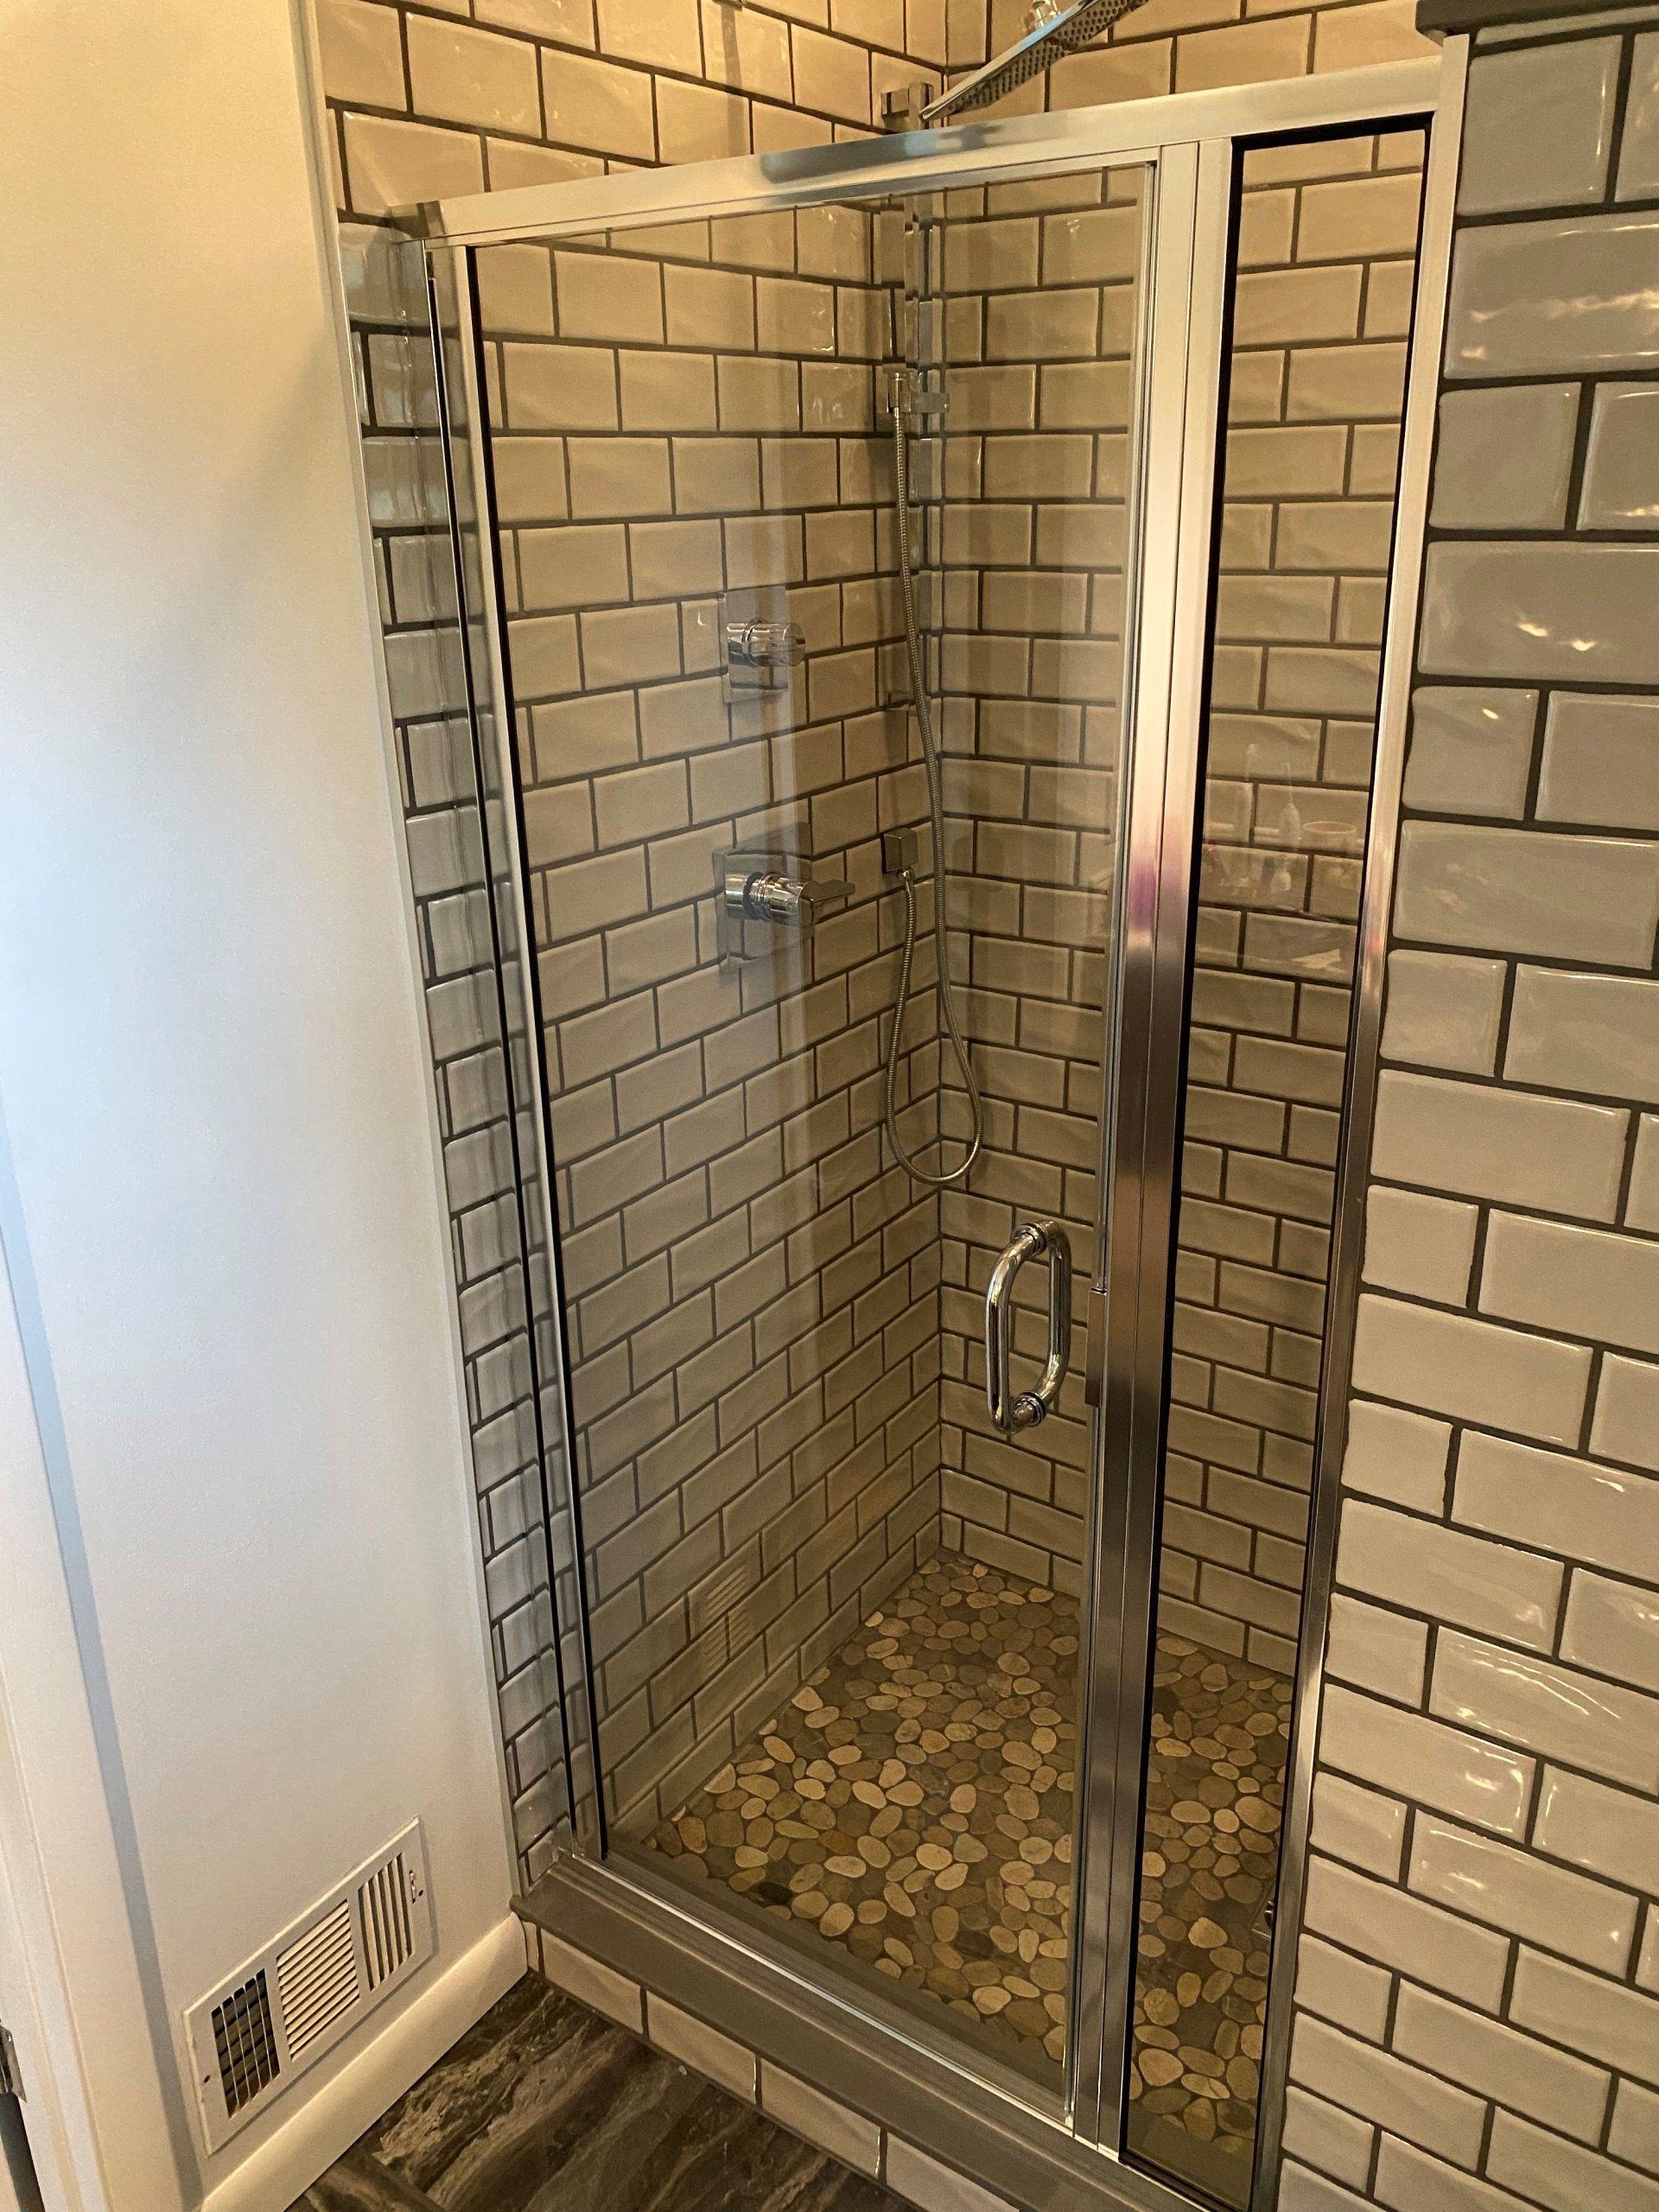 Shower door closed with pebble tile floor